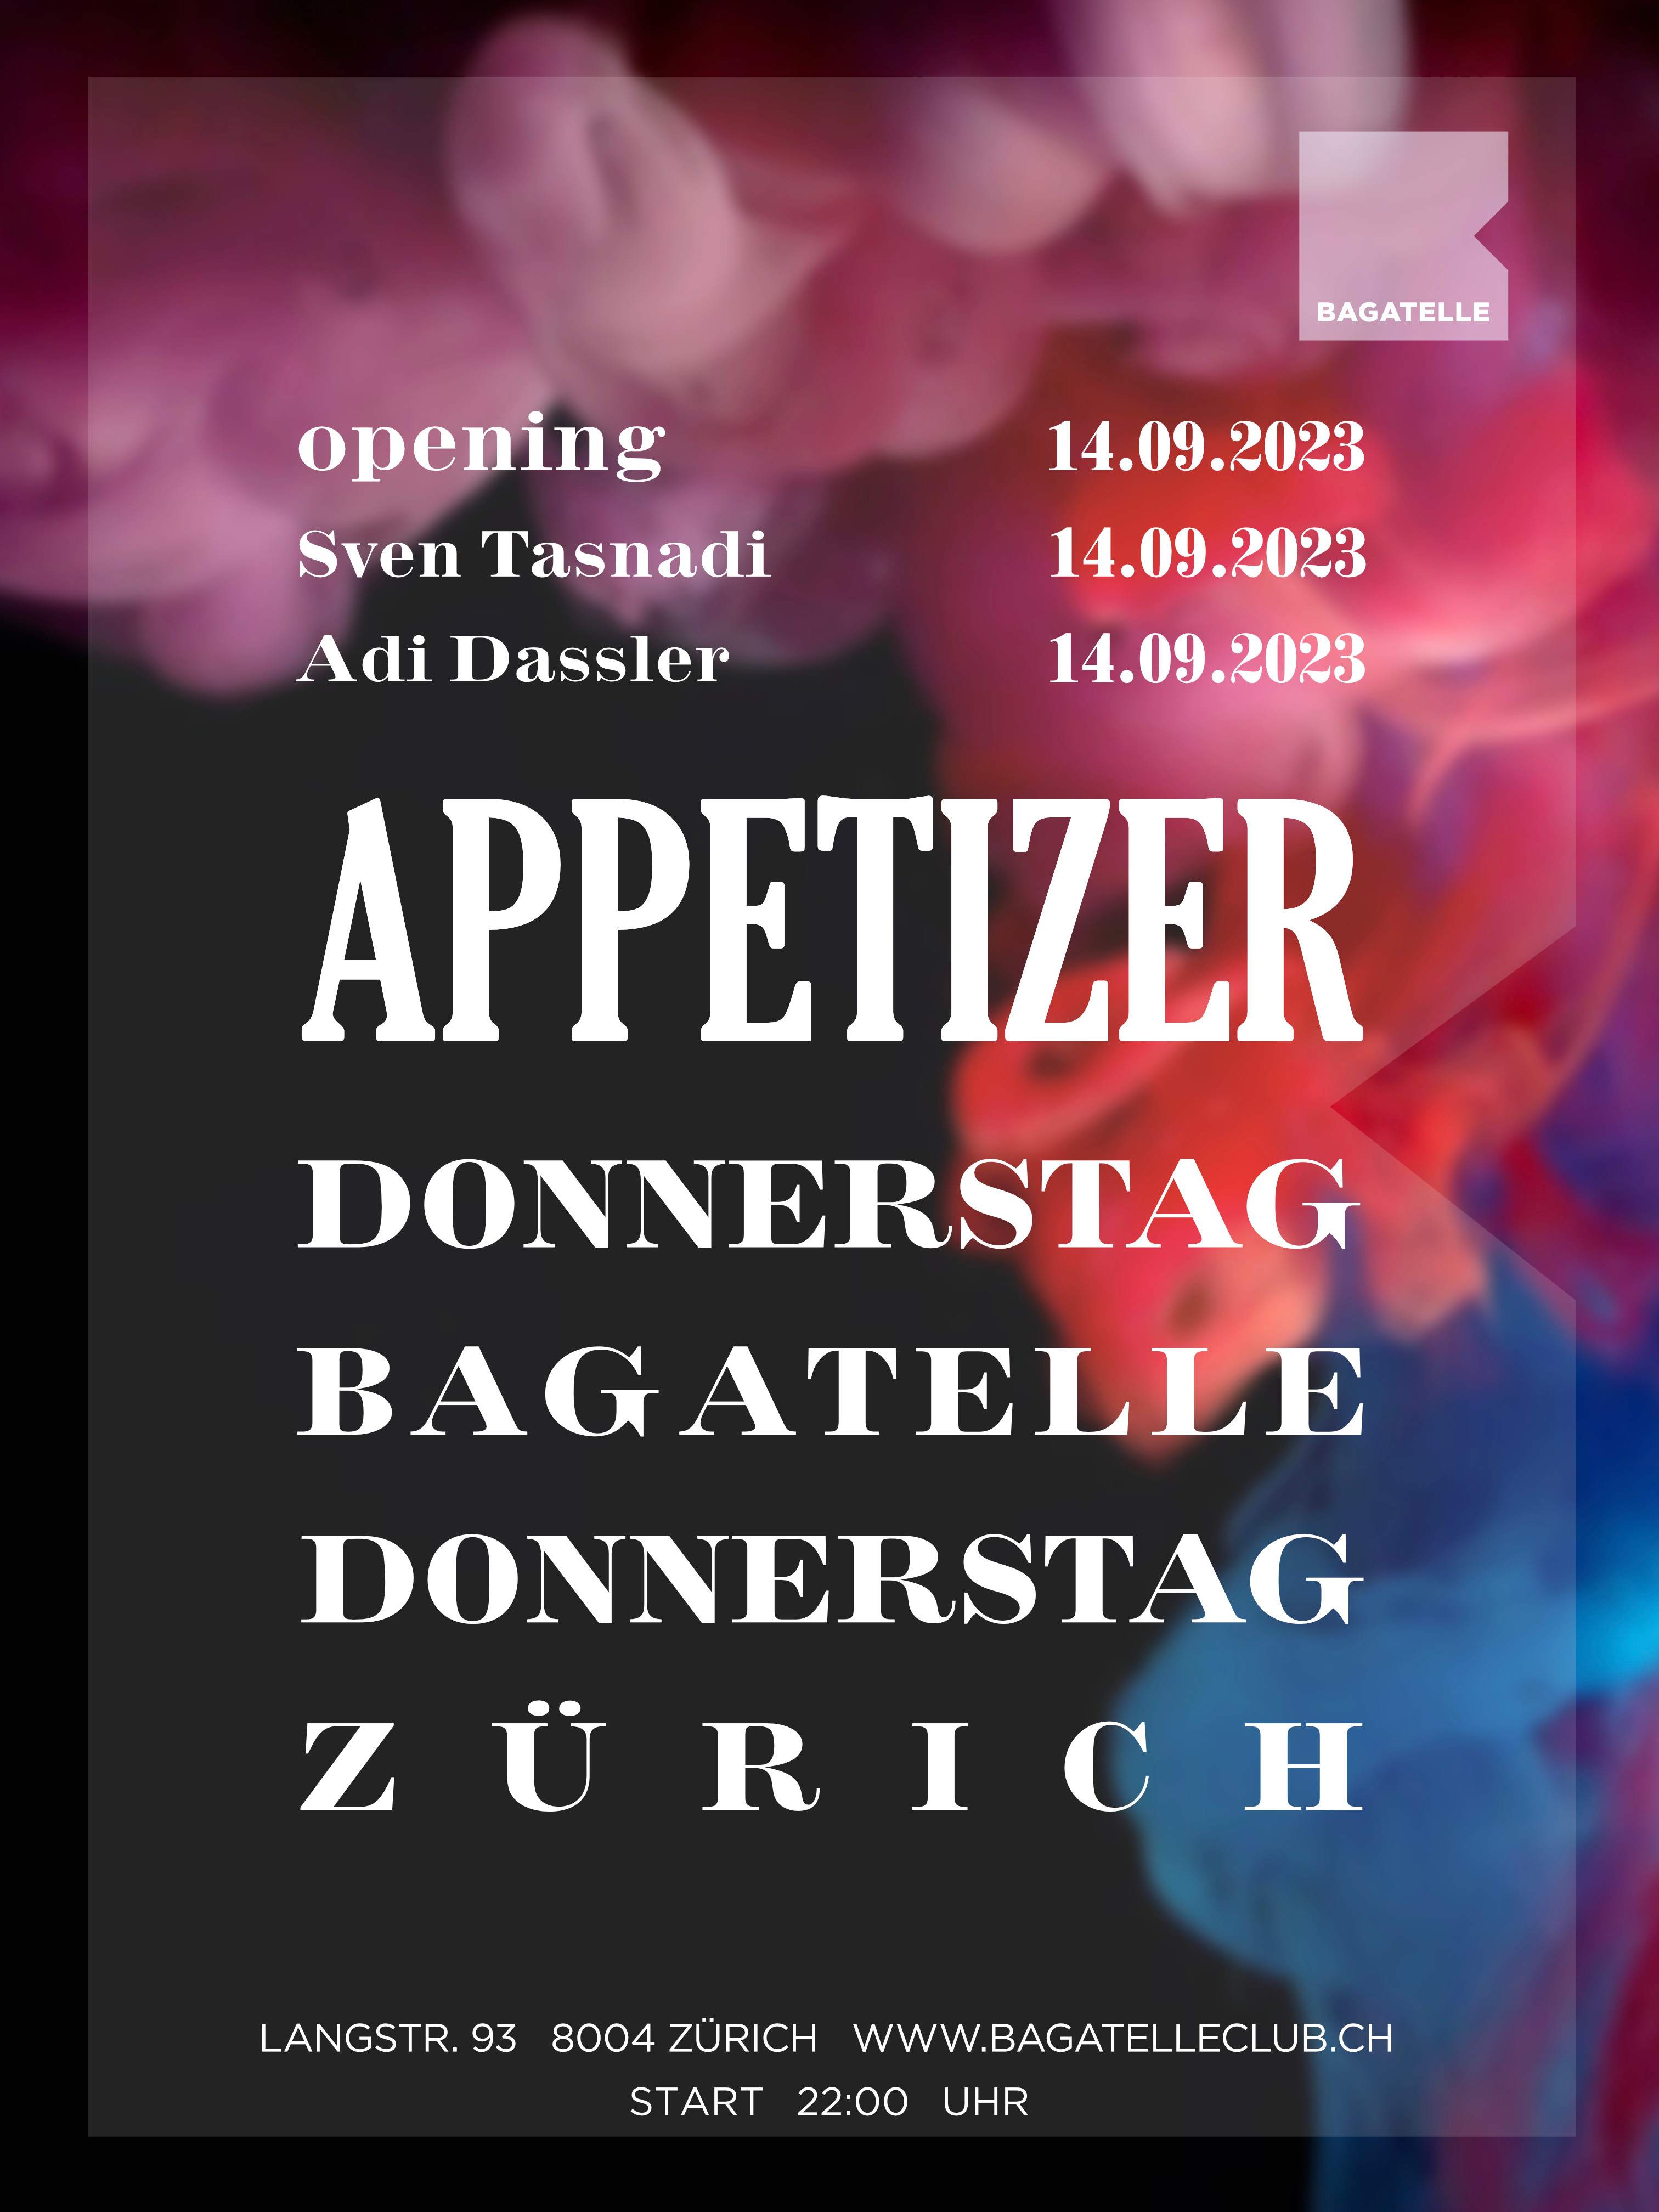 Appetizer OPENING Zurich - フライヤー表